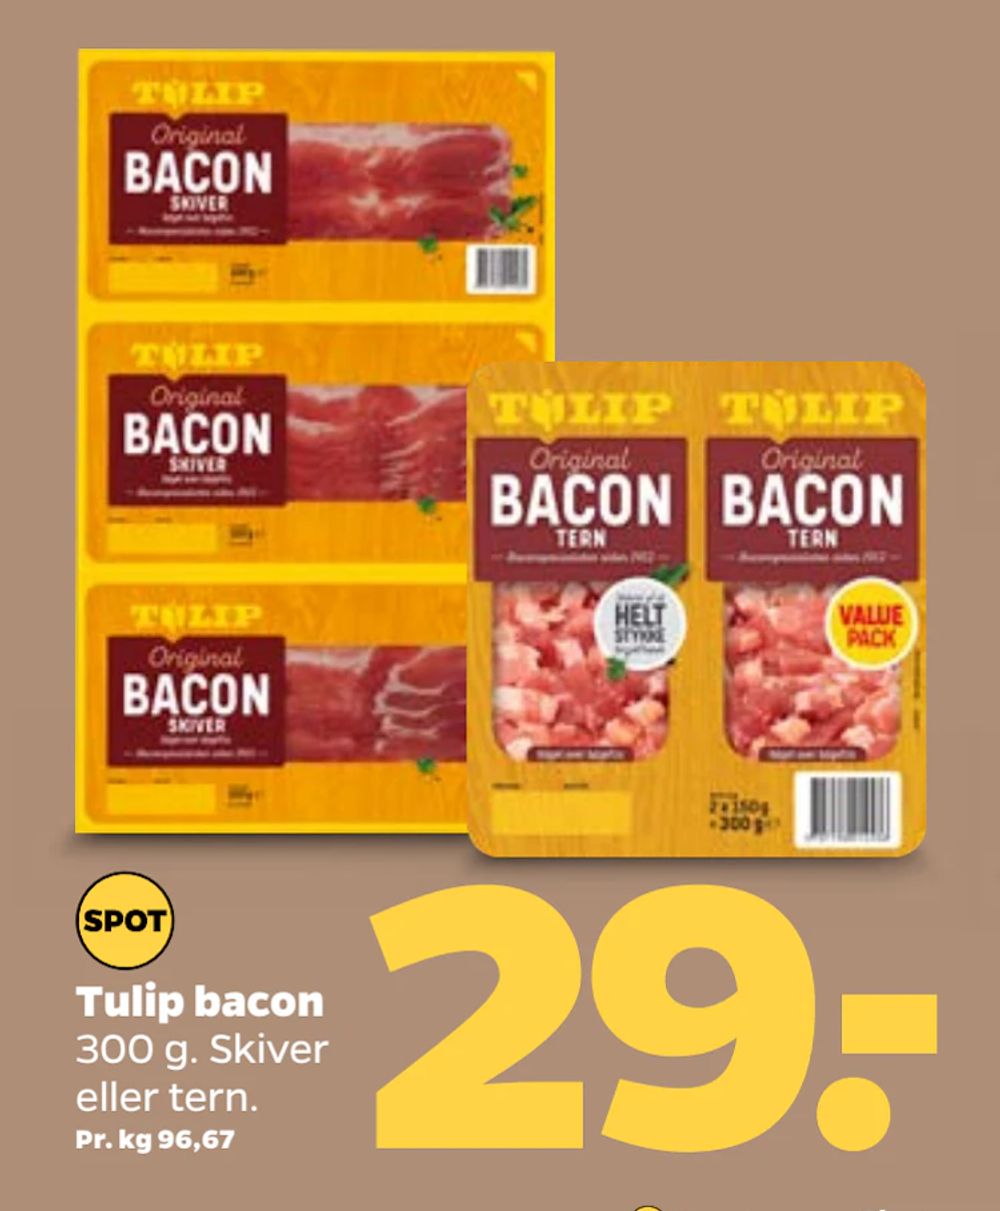 Tilbud på Tulip bacon fra Netto til 29 kr.